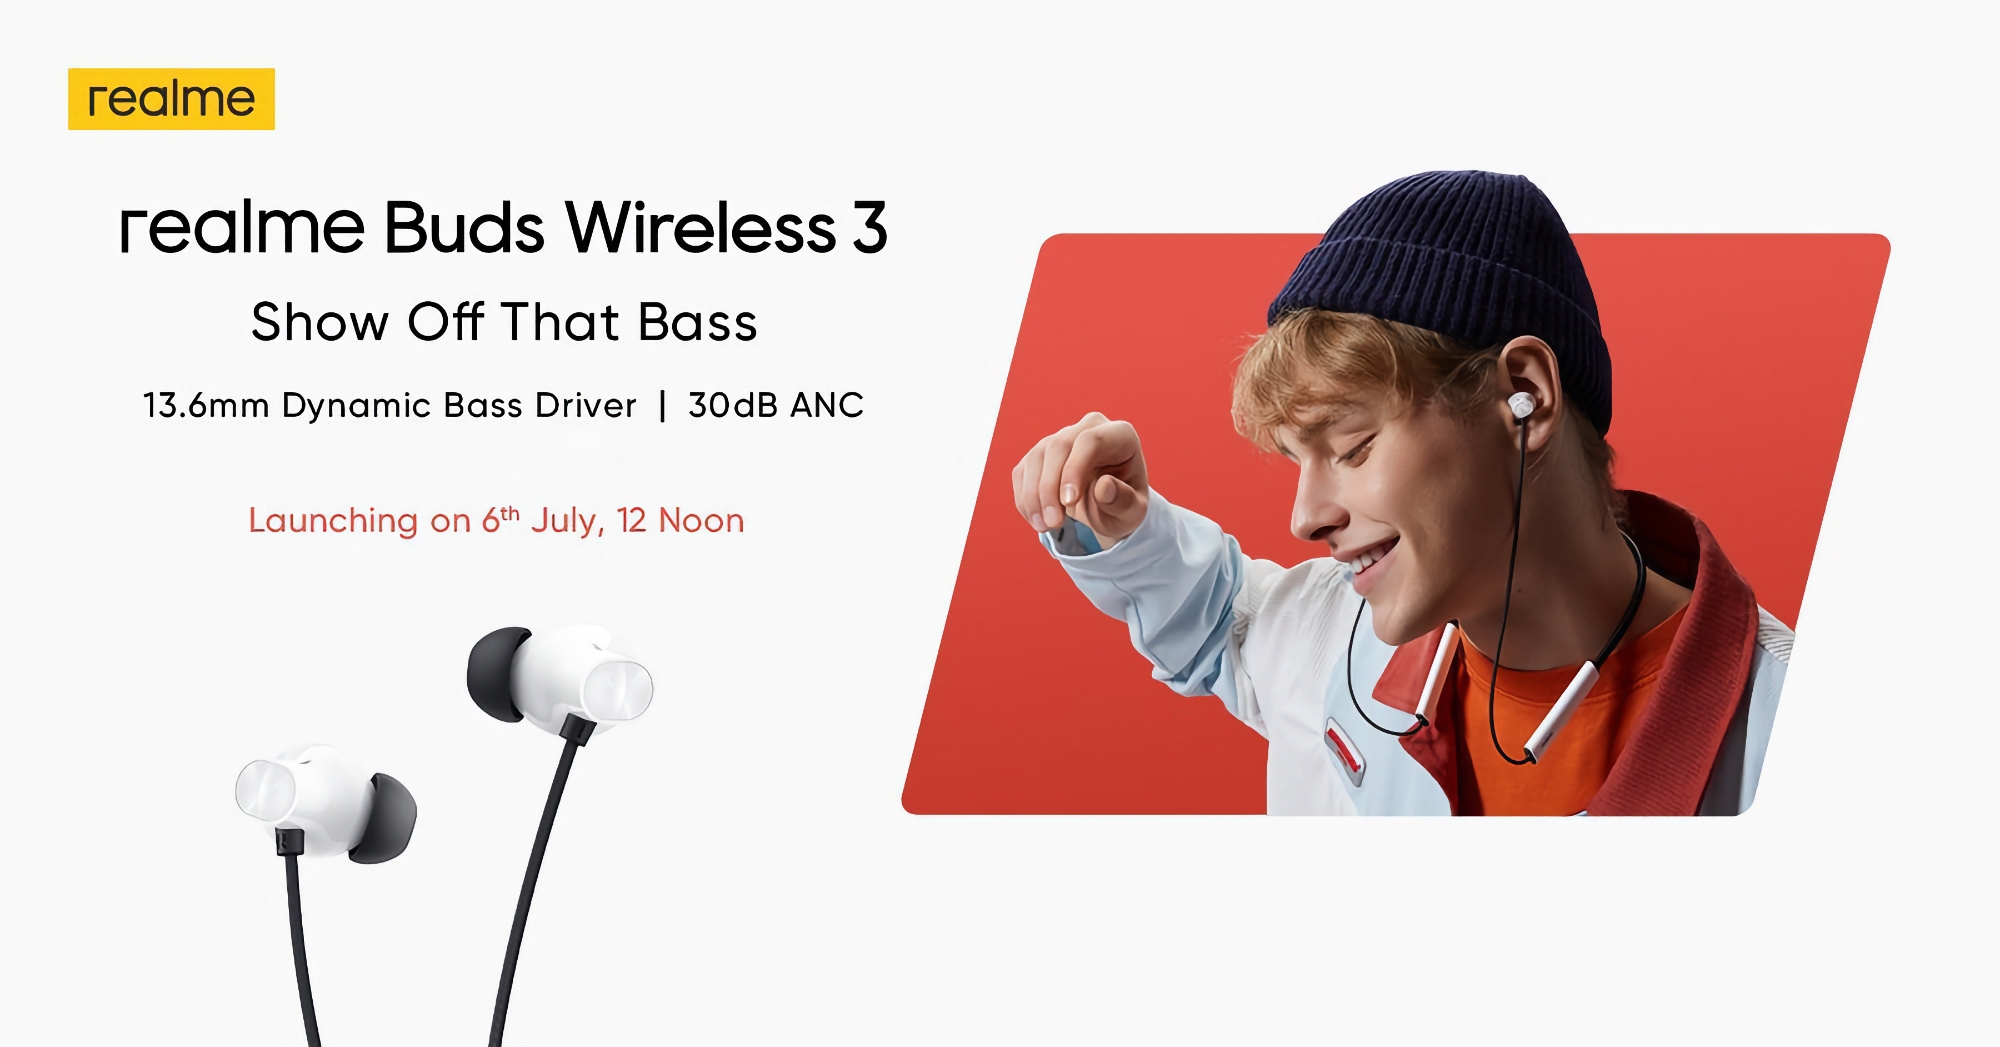 realme zaprezentuje słuchawki Buds Wireless 3 z ANC i dźwiękiem przestrzennym w cenie poniżej 40 USD 6 lipca.